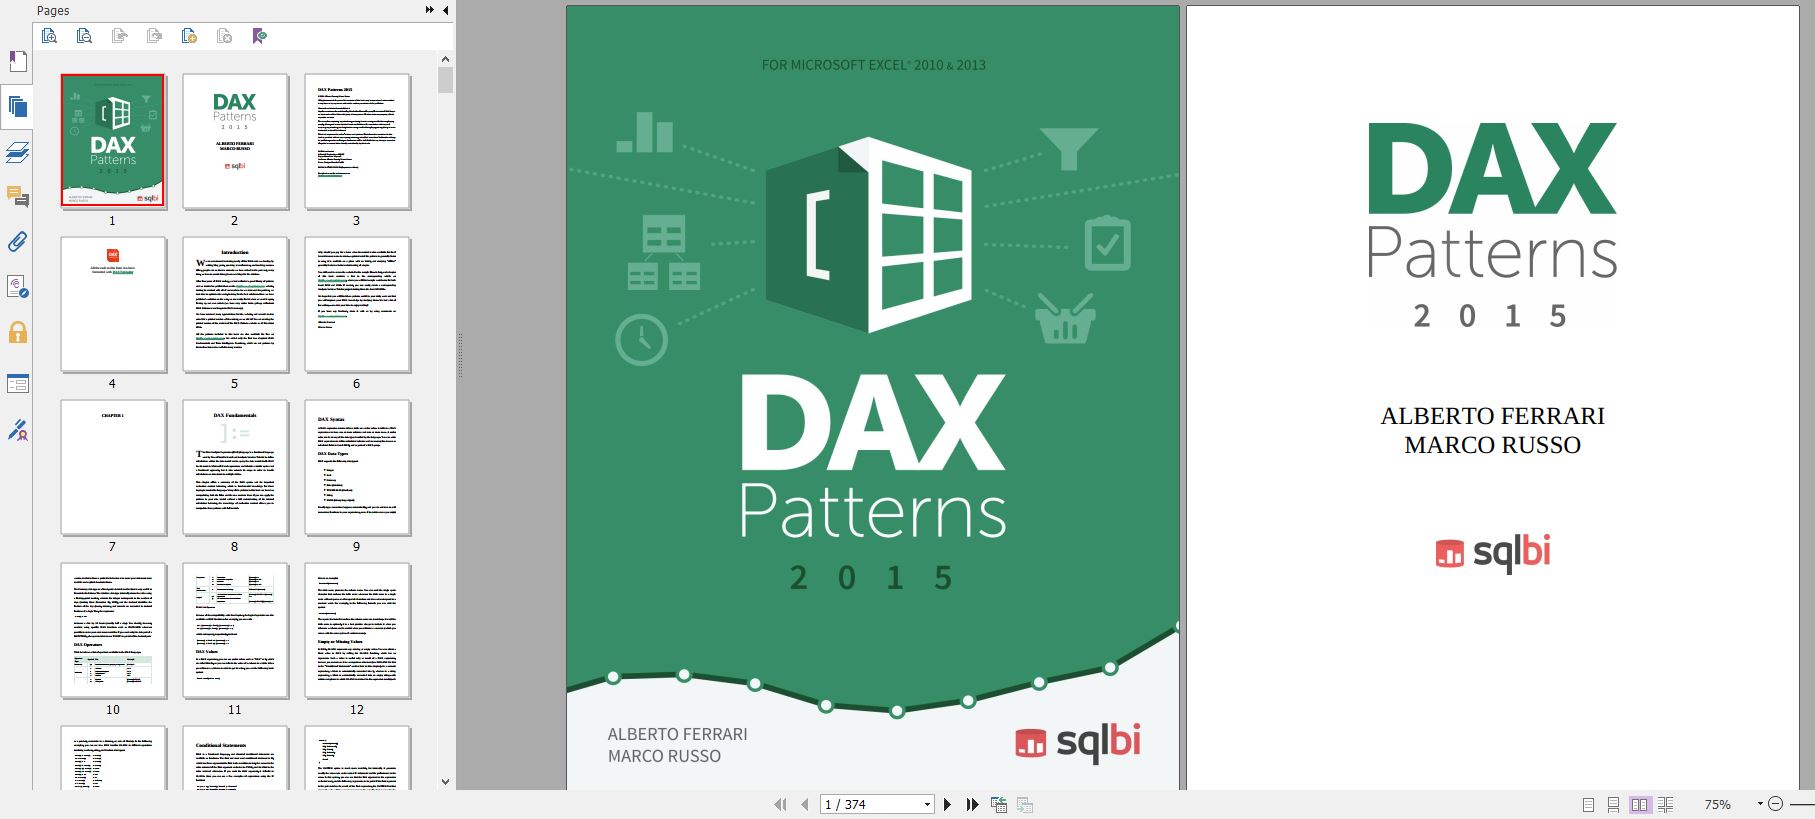 دانلود کتاب DAX patterns 2015 دانلود kindle کتاب از امازون خرید آمازونBuy a Kindle Download Kindle Book From Amazon دانلودPDF کتاب DAX patterns دانلود کیندل گیگاپیپر